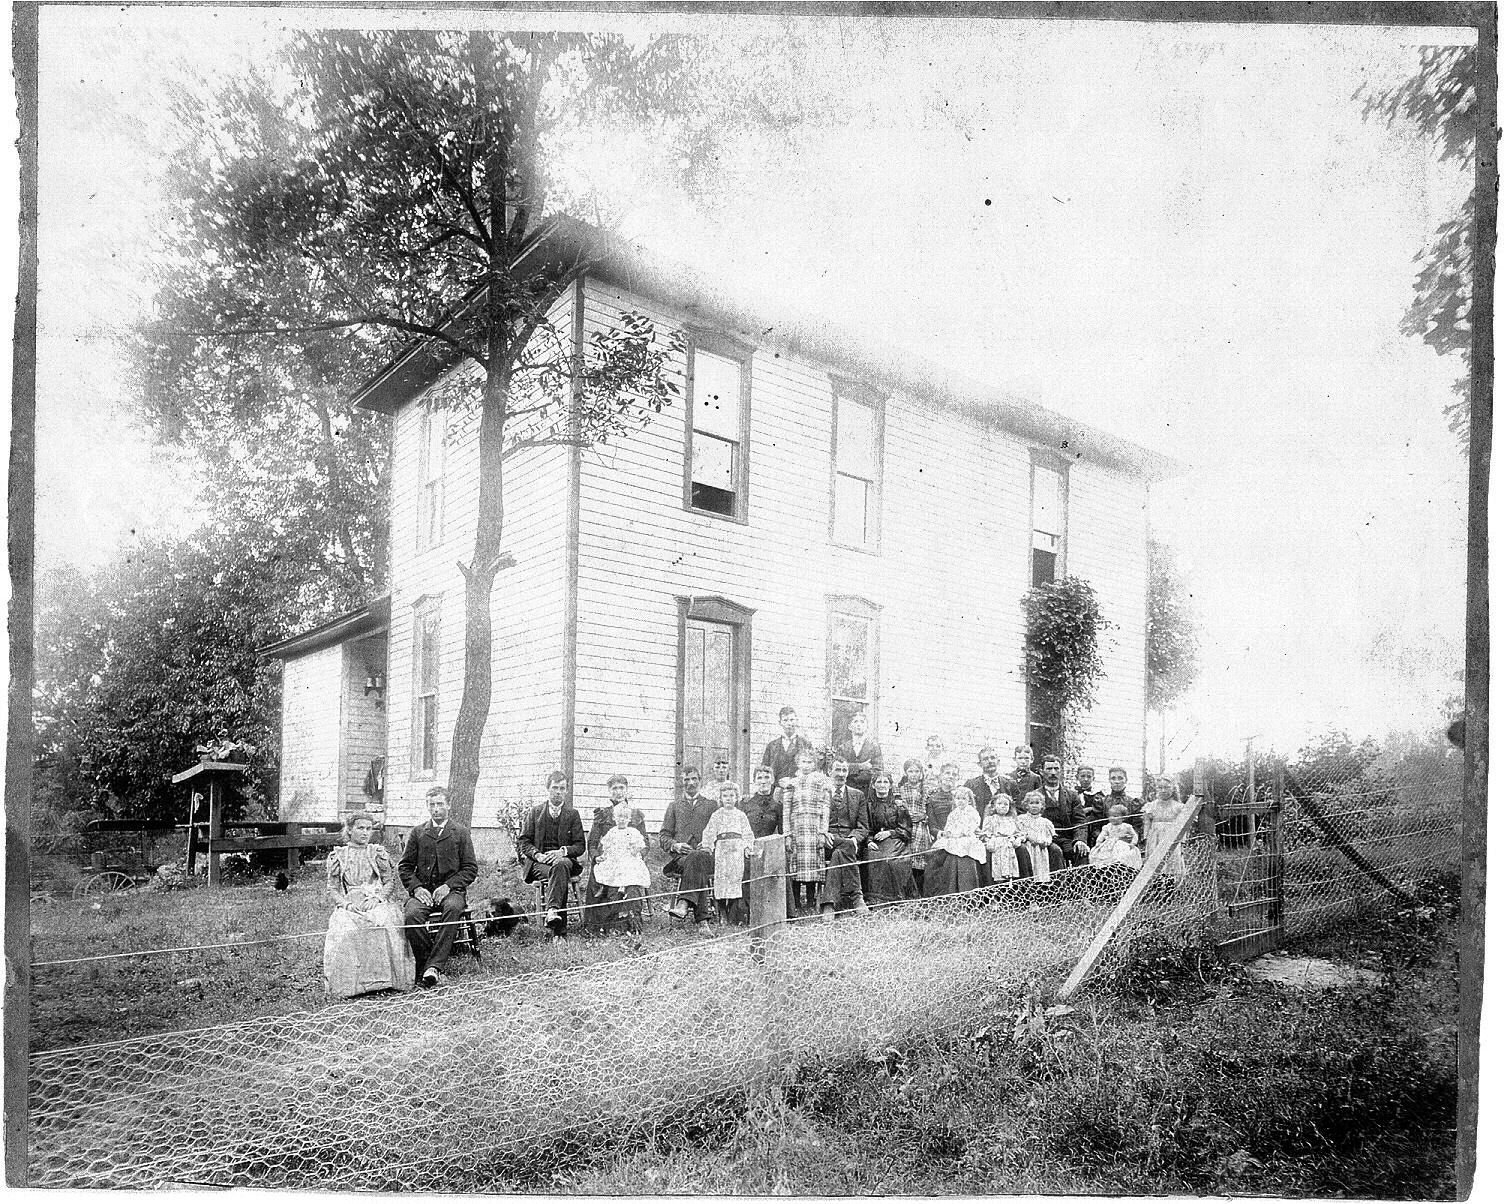 Gutridge family reunion 1899